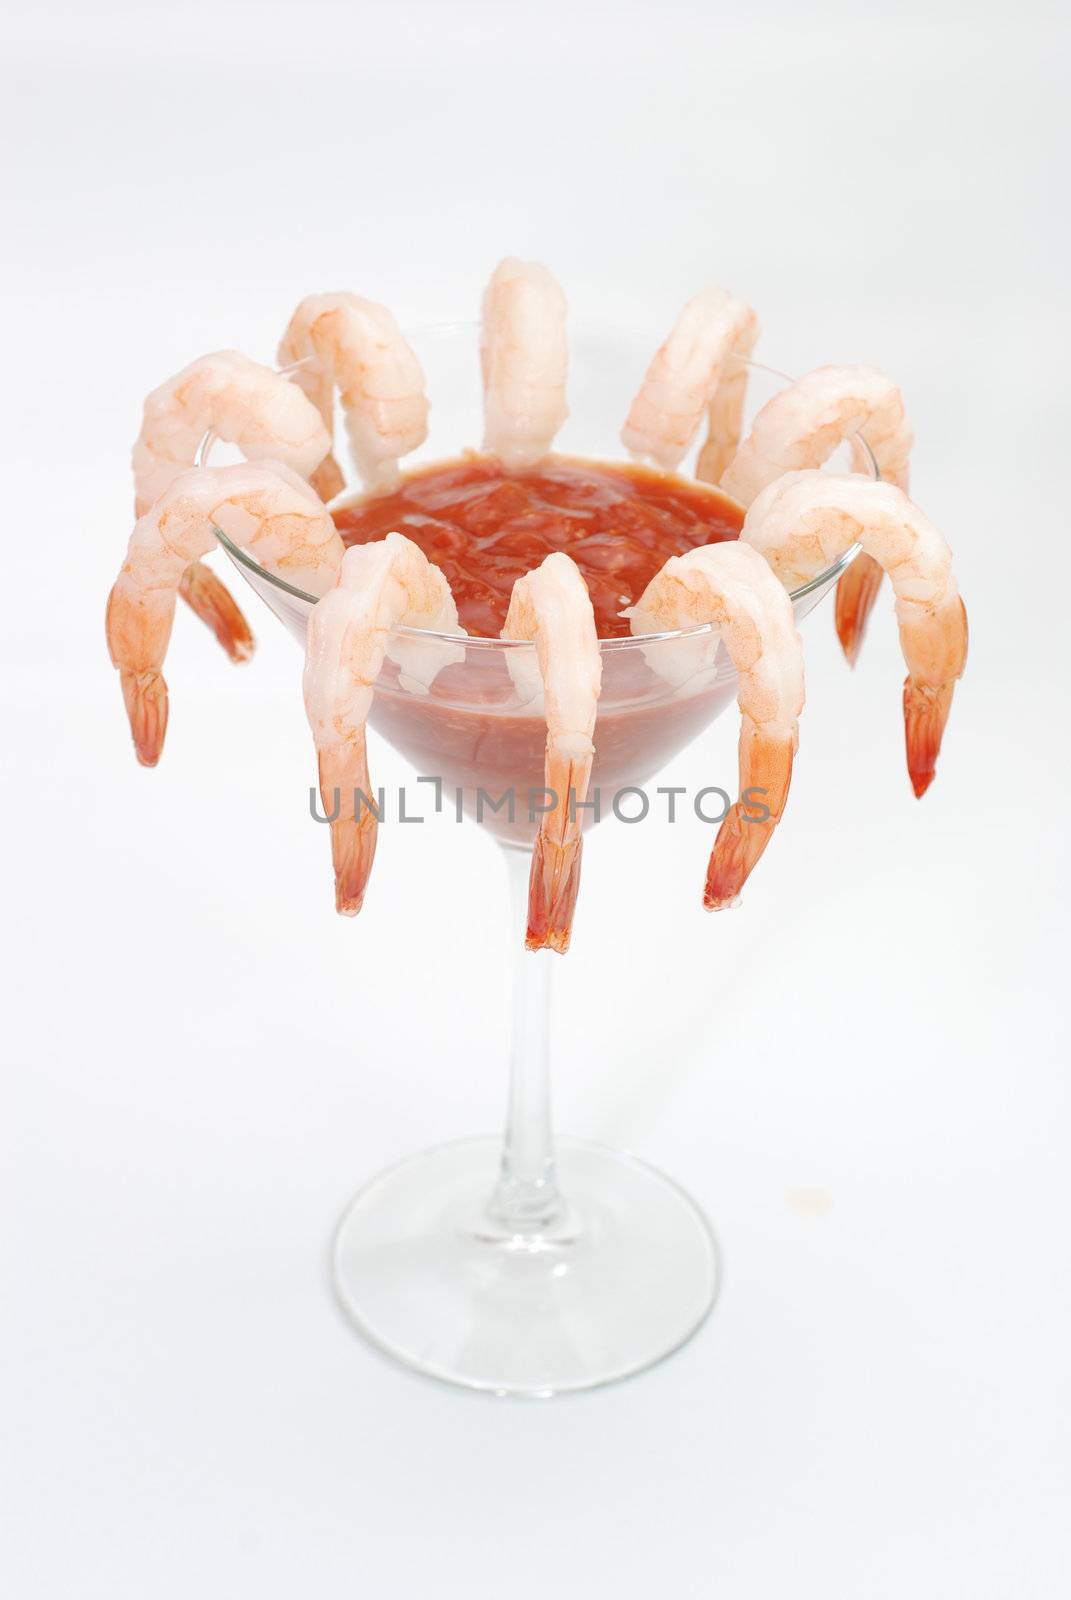 Shrimp cocktail in martini glass.